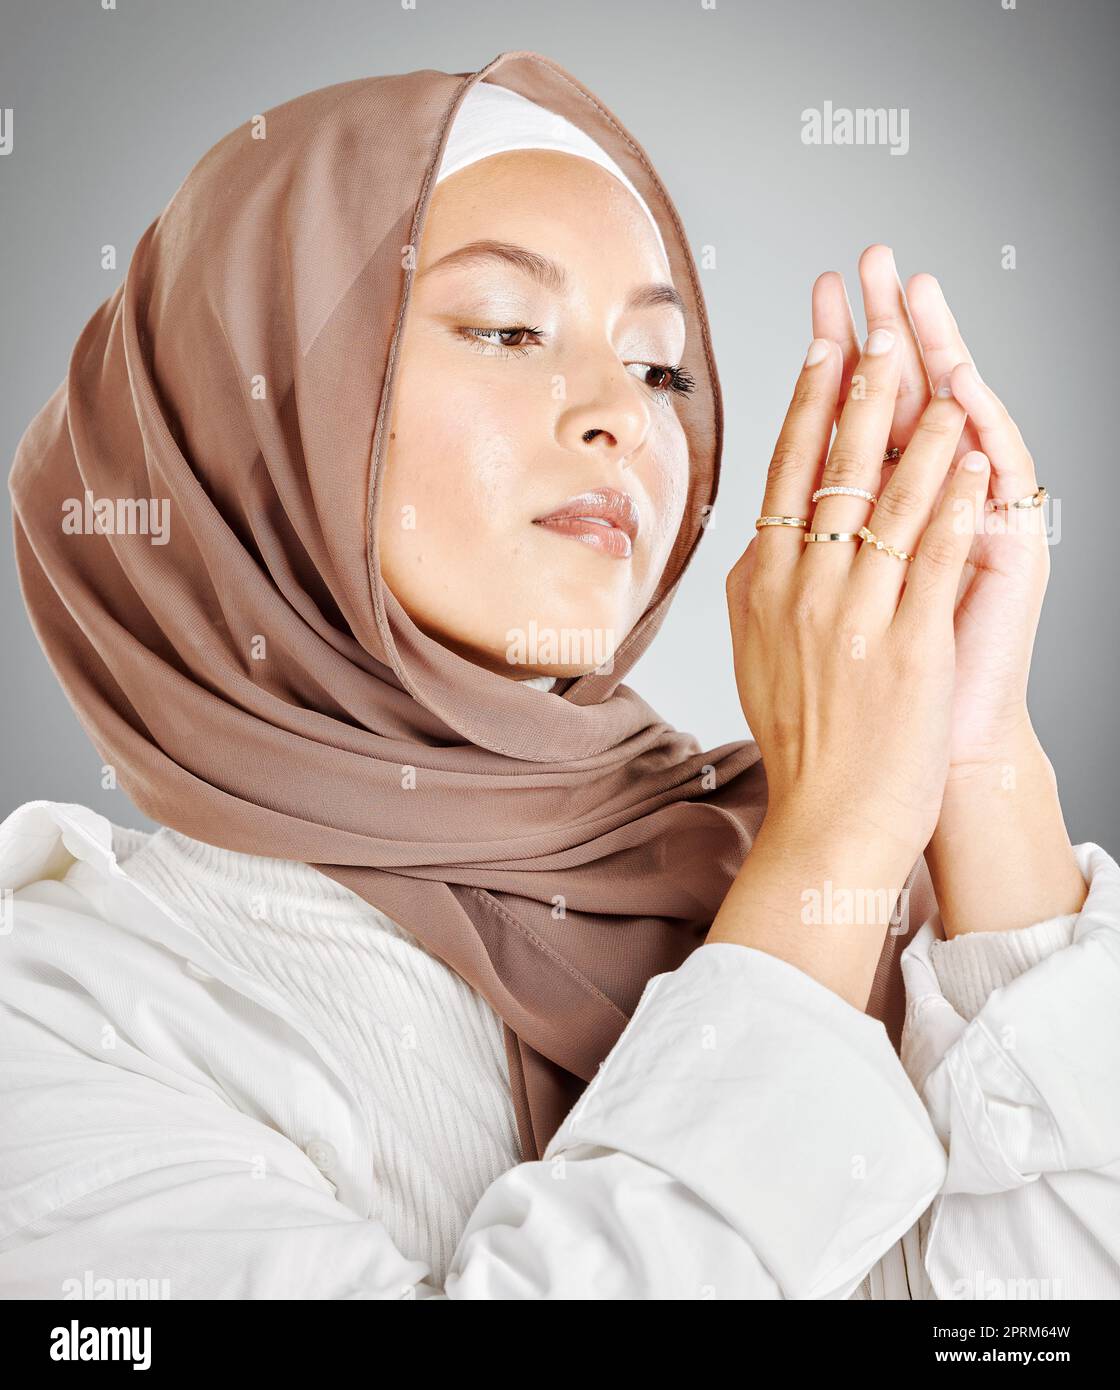 Hijab, gioielli e moda di donna in islam beauty headshot con trucco o cosmetici in uno studio mock up. Modello arabo, musulmano o arabo con sciarpa Foto Stock